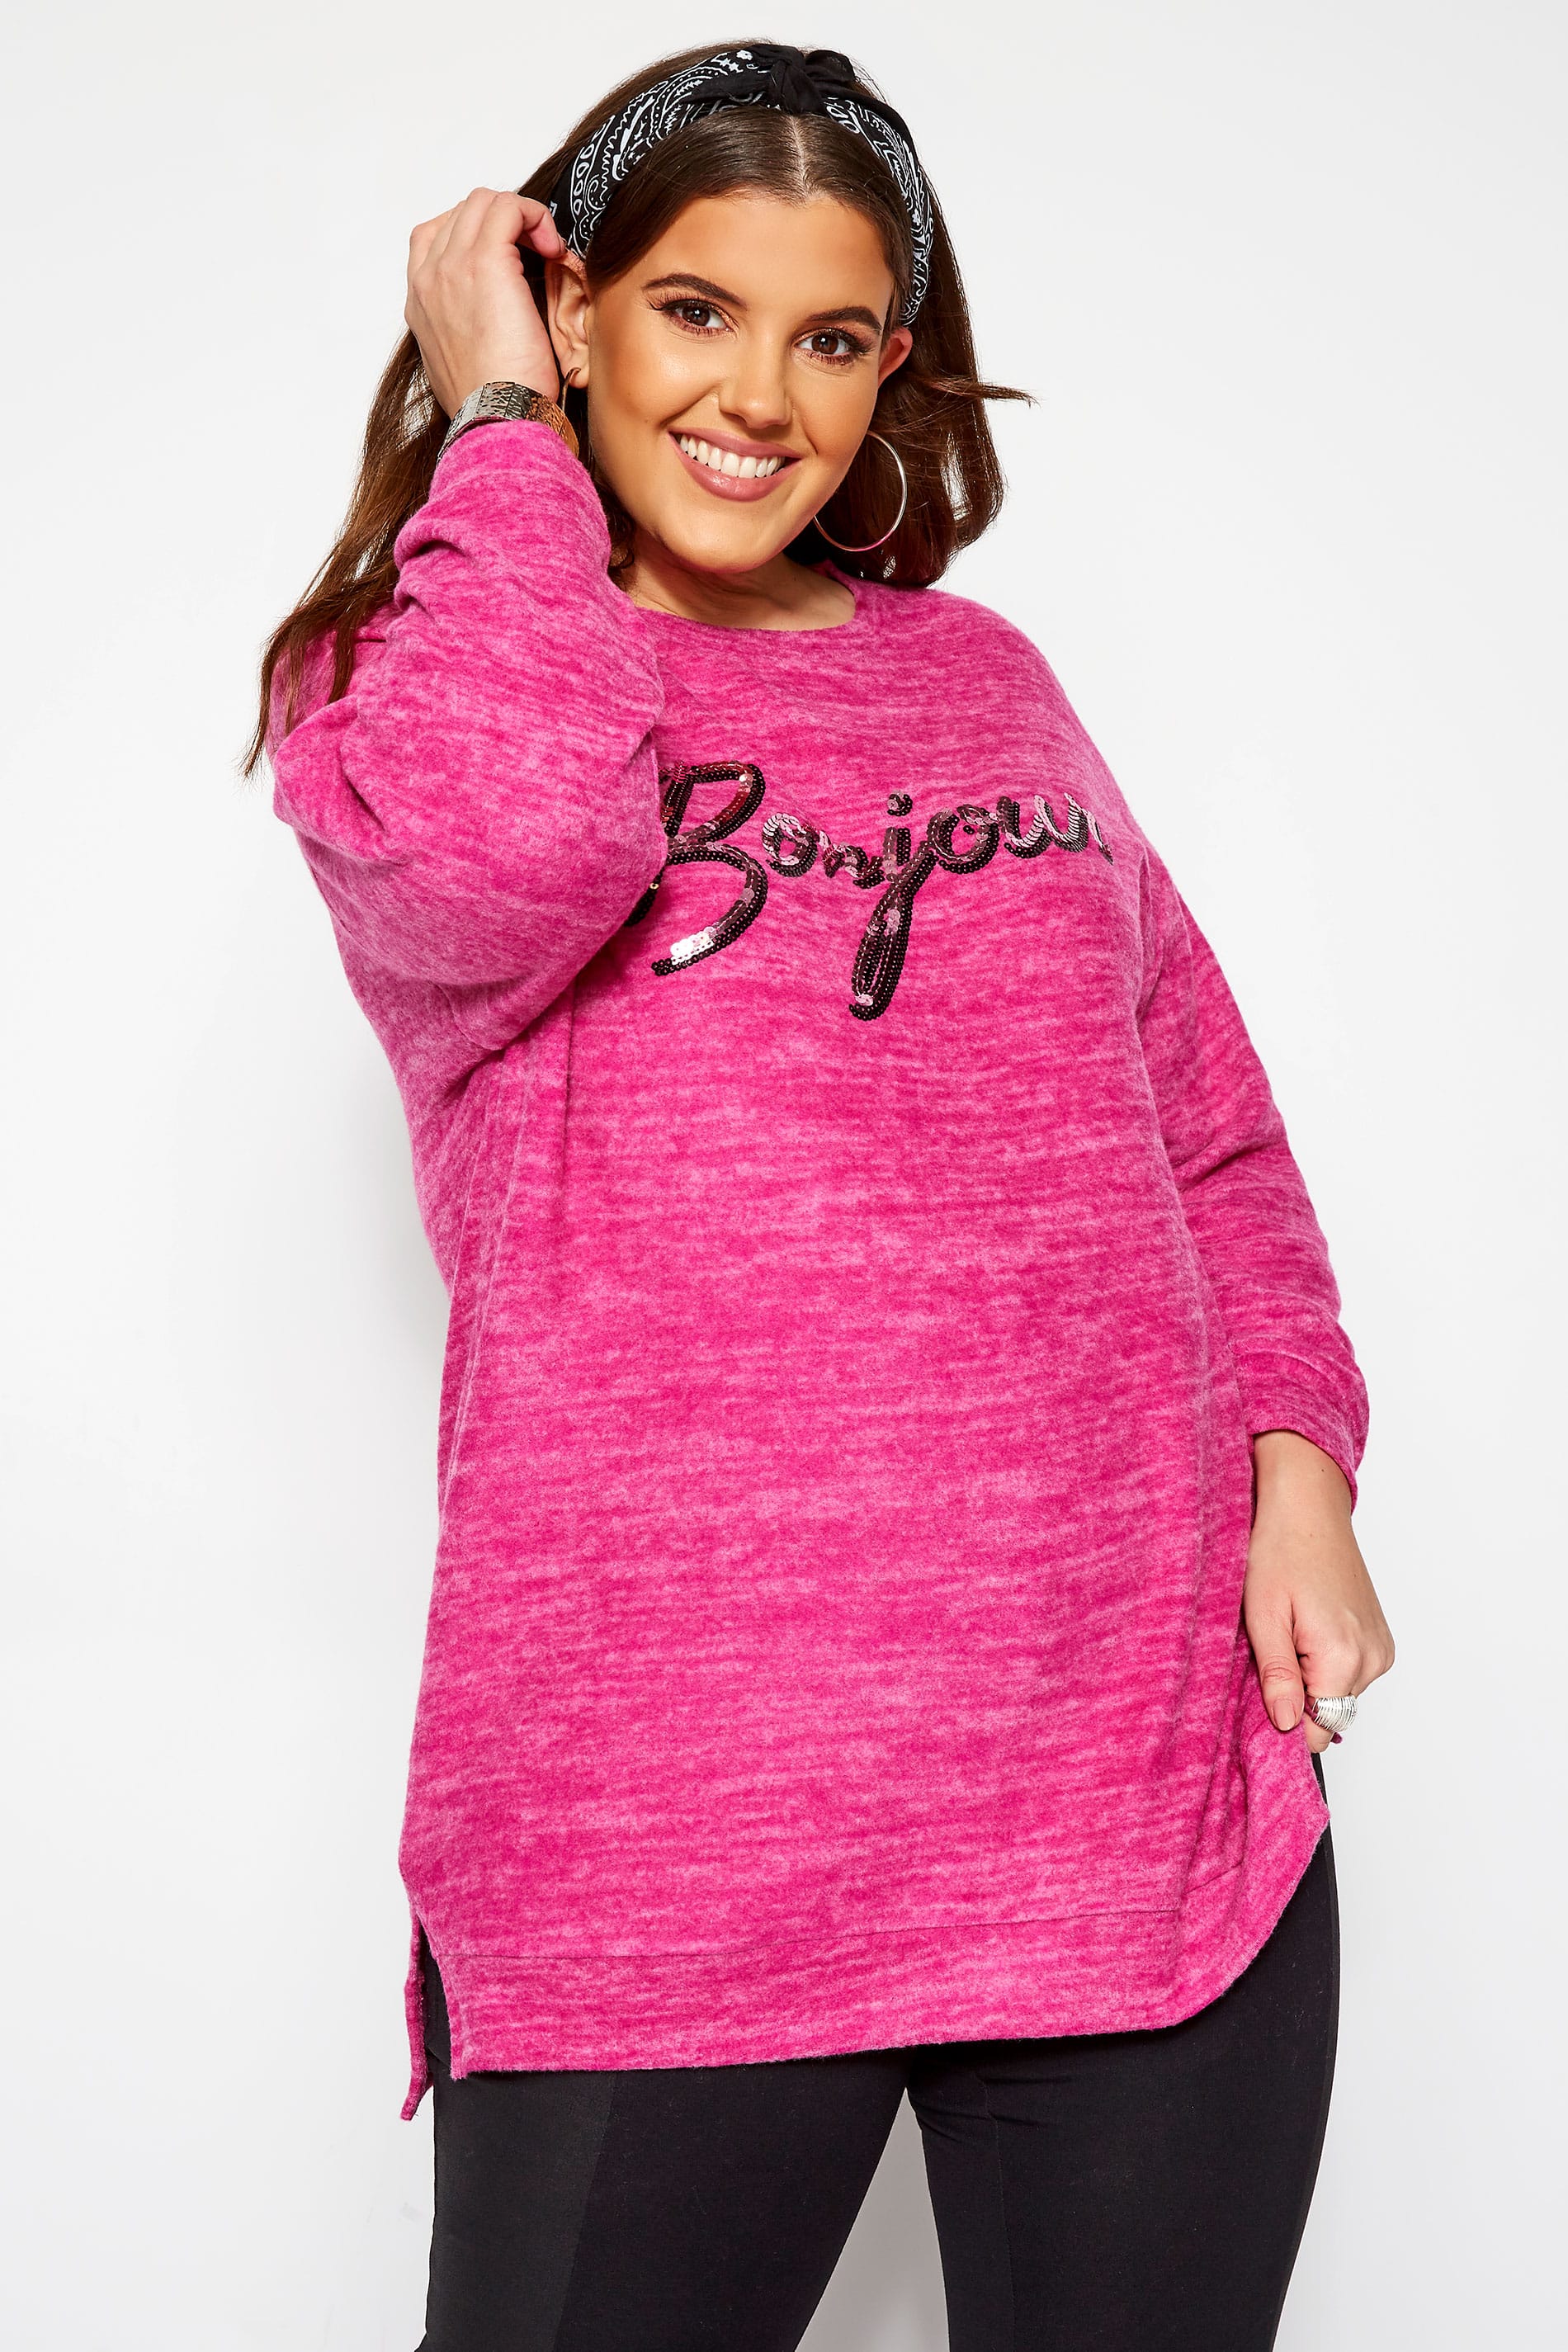 Pink Sequin 'Bonjour' Slogan Jumper | Yours Clothing